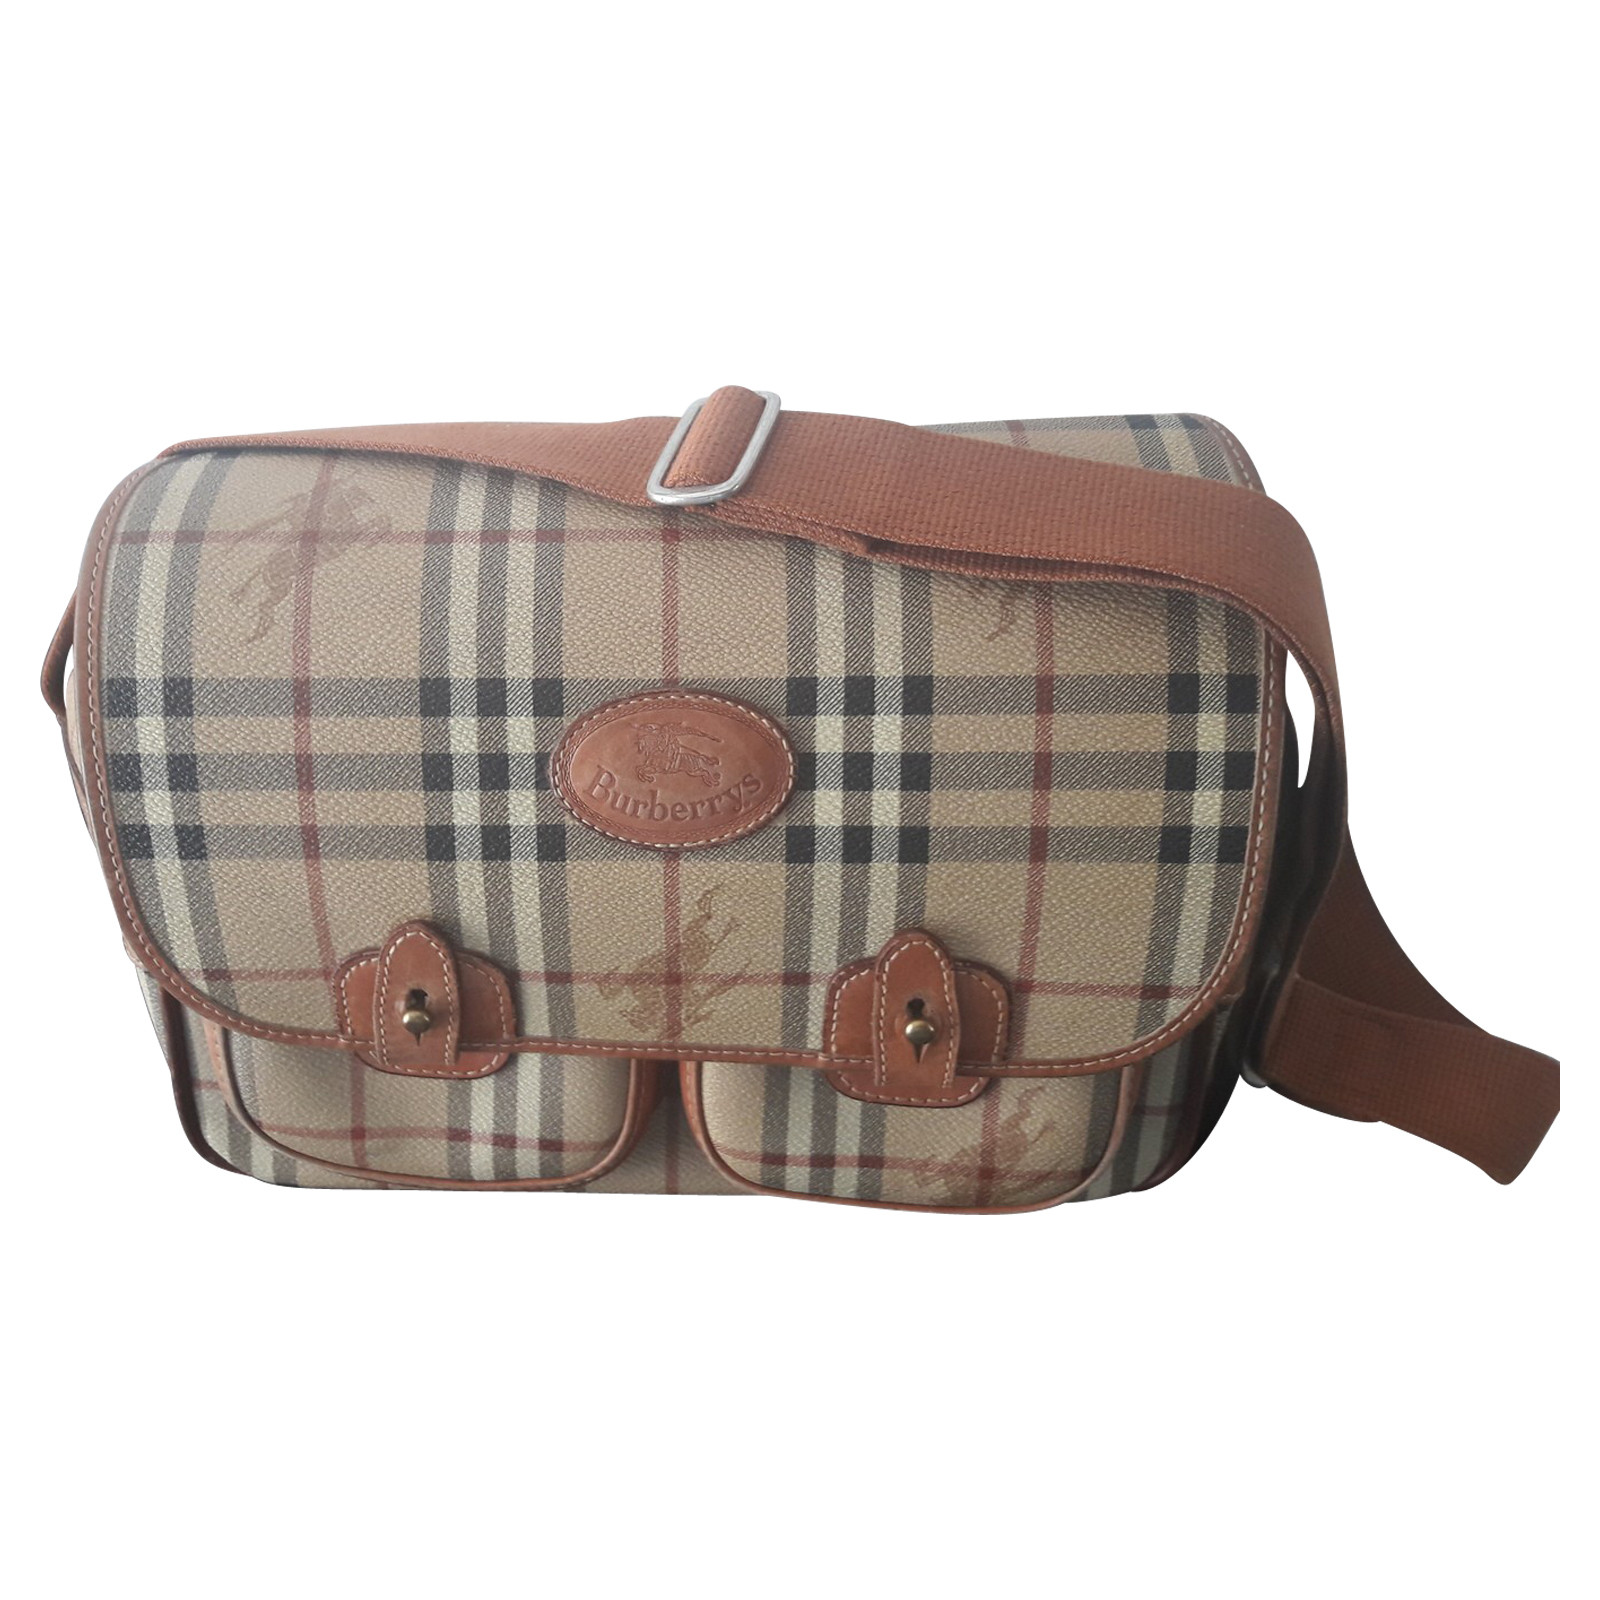 Burberry Tasche - Second Hand Burberry Tasche gebraucht kaufen für 300€  (2448837)